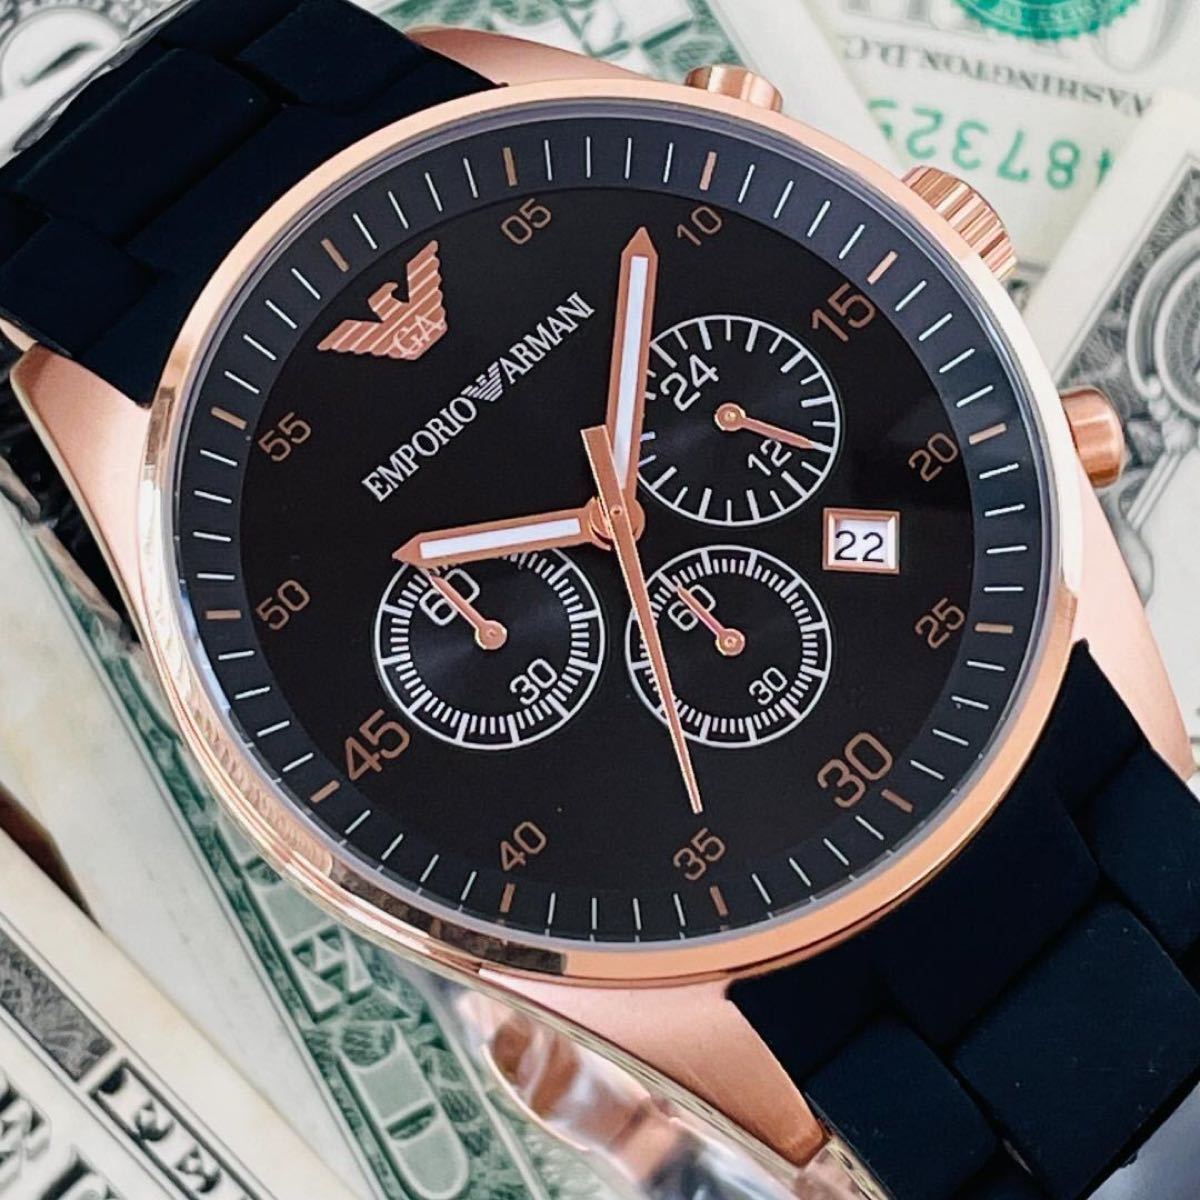 即購入OK◆【新品未使用】エンポリオ・アルマーニEMPORIO ARMANIメンズ腕時計ブラック即納クロノグラフ高級ブランド